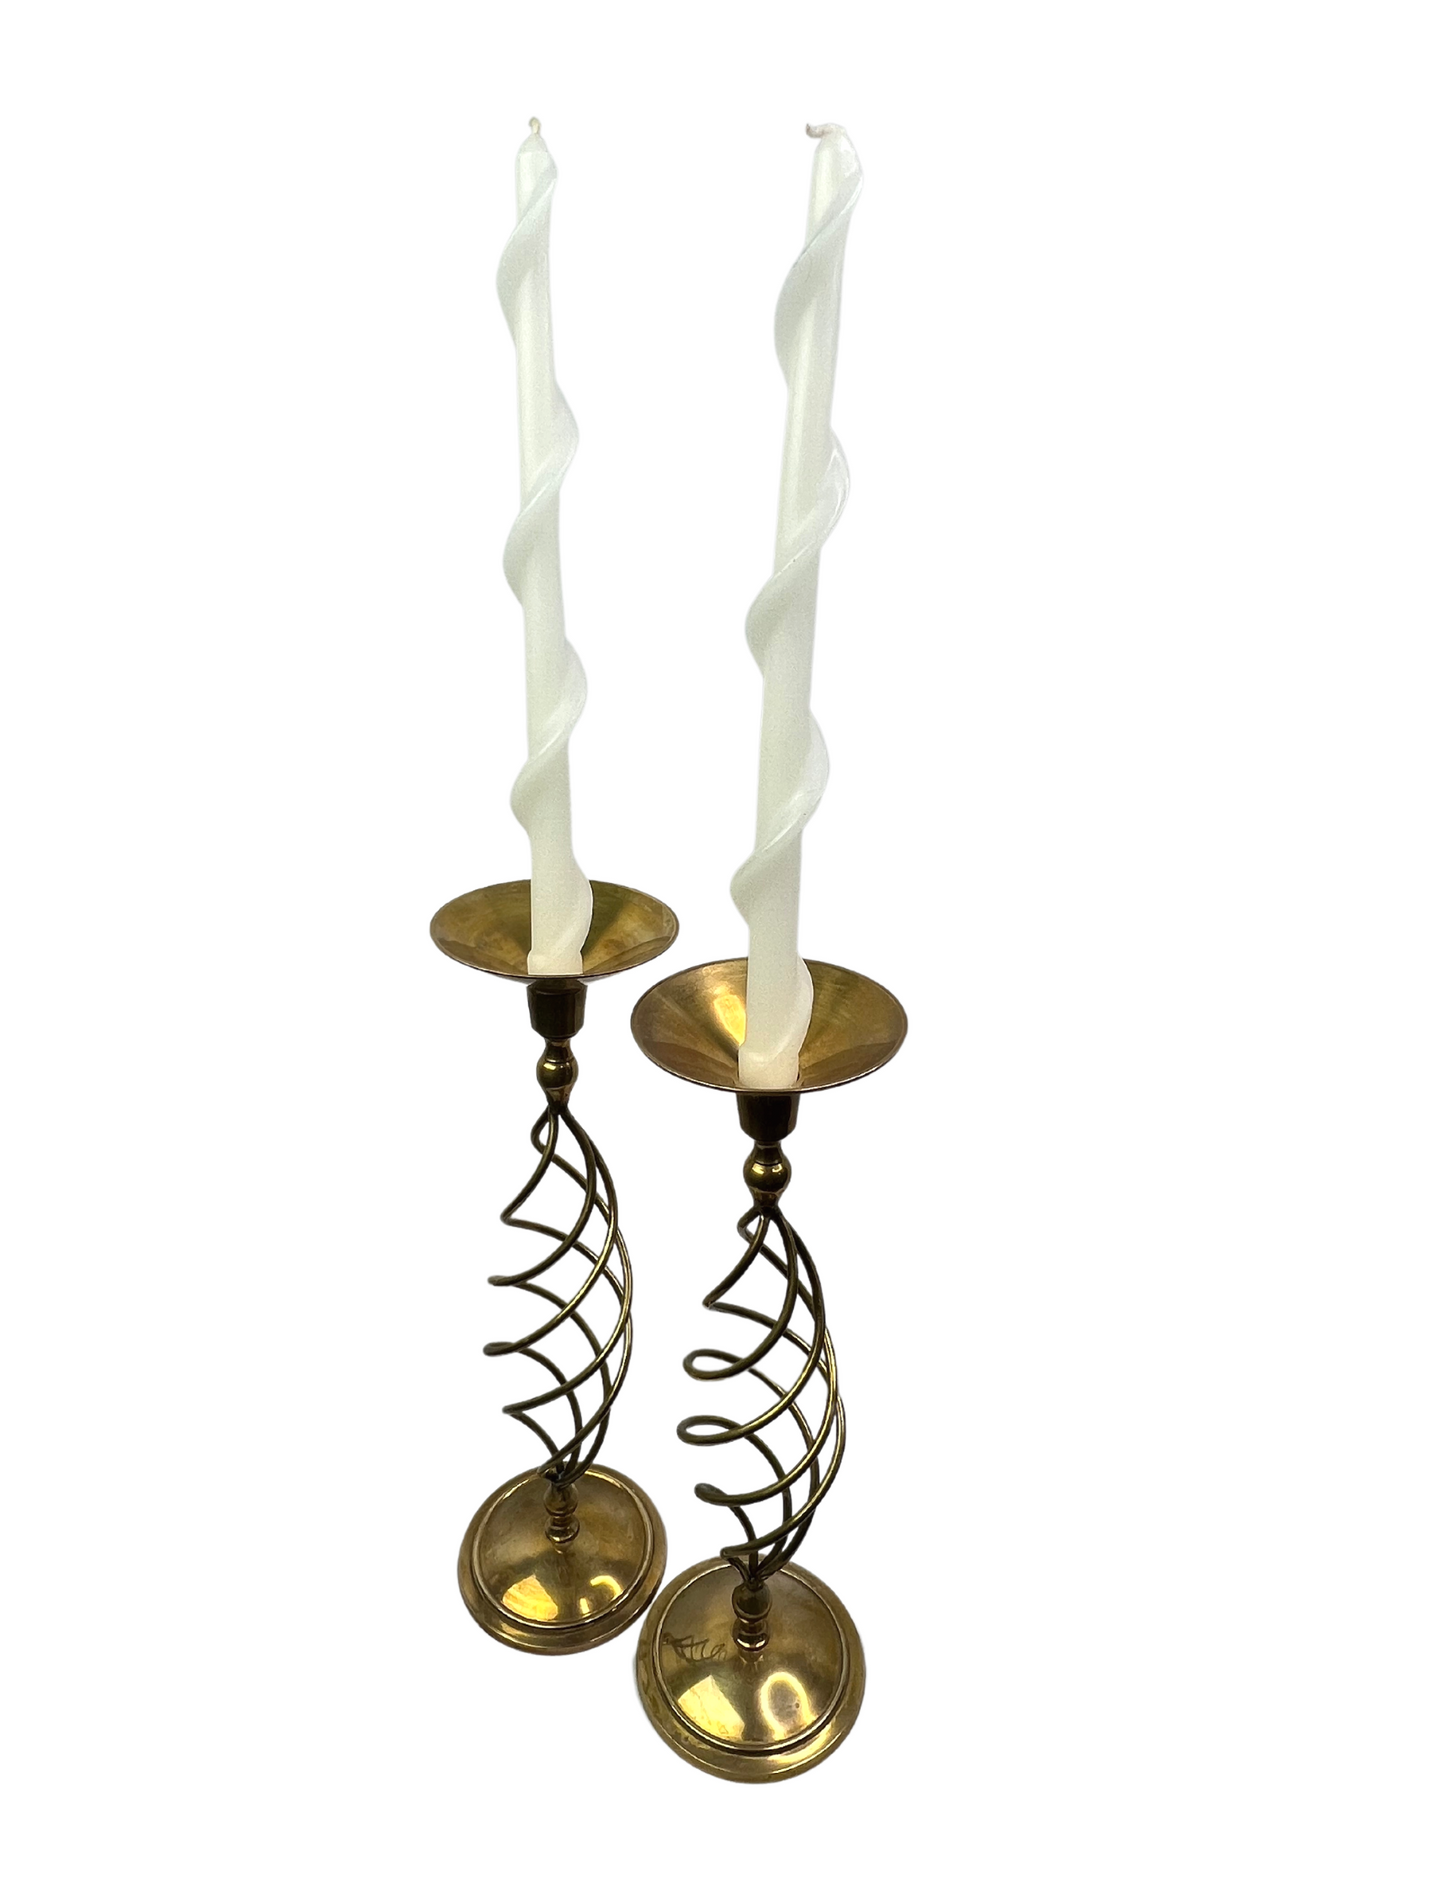 70’s Set of 2 Brass Spiral Candlesticks